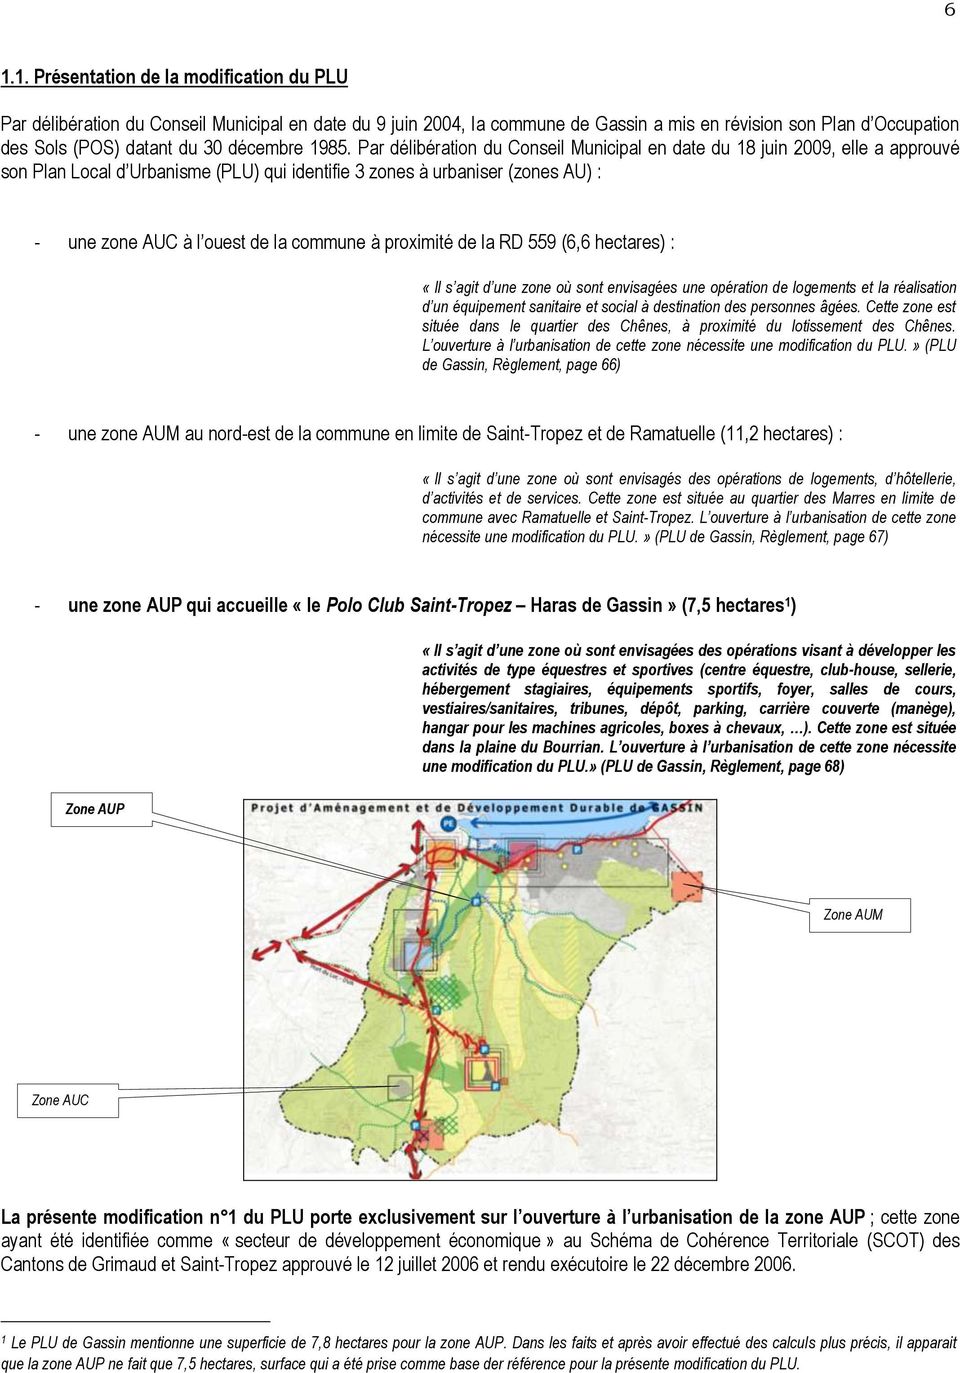 Par délibération du Conseil Municipal en date du 18 juin 2009, elle a approuvé son Plan Local d Urbanisme (PLU) qui identifie 3 zones à urbaniser (zones AU) : - une zone AUC à l ouest de la commune à